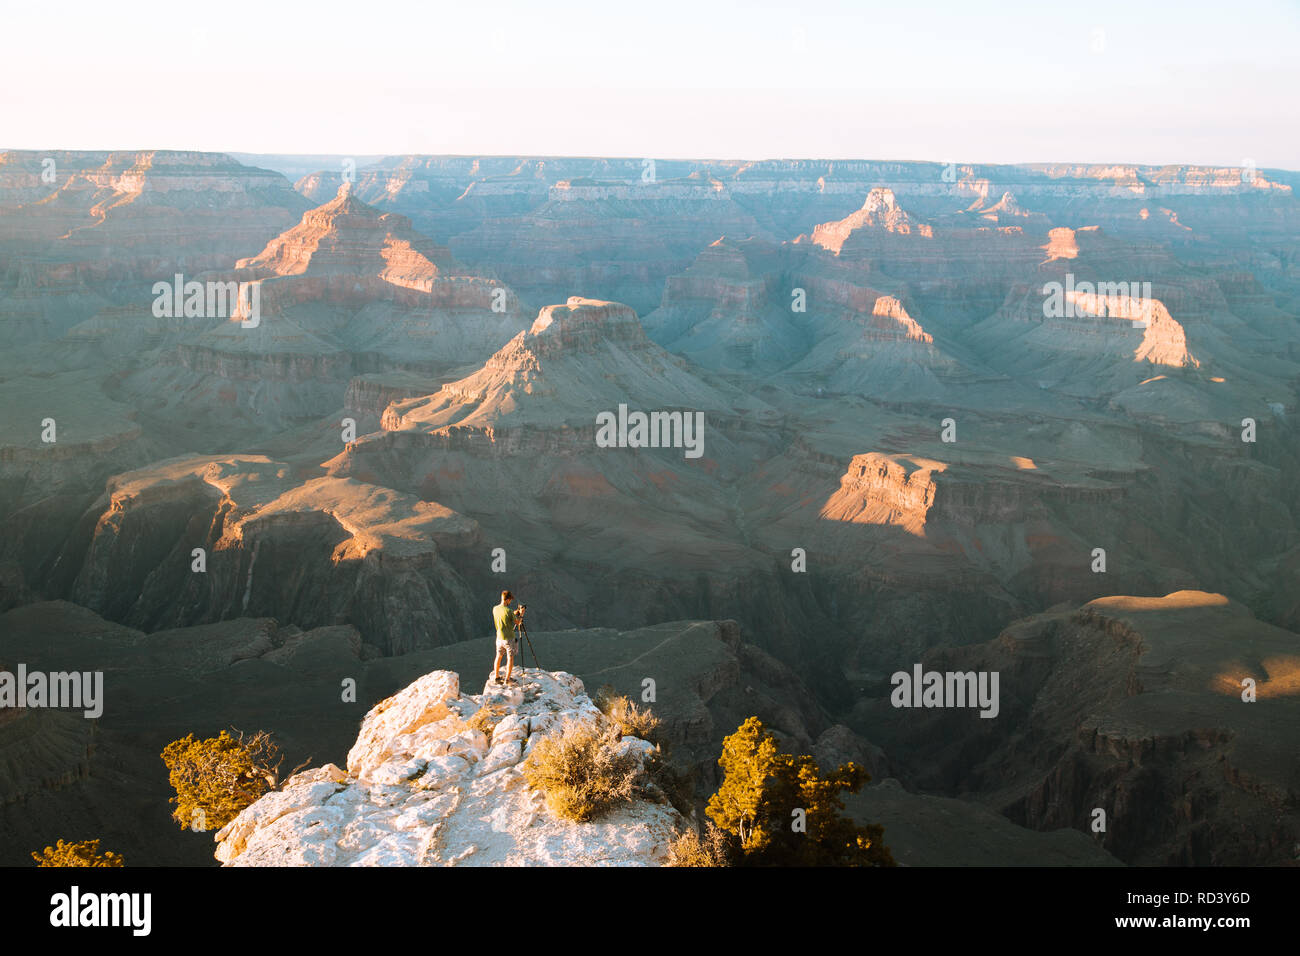 Un photographe est debout sur une falaise en profitant de la magnifique vue sur la célèbre Grand Canyon National Park au coucher du soleil, sud-ouest américain, USA Banque D'Images